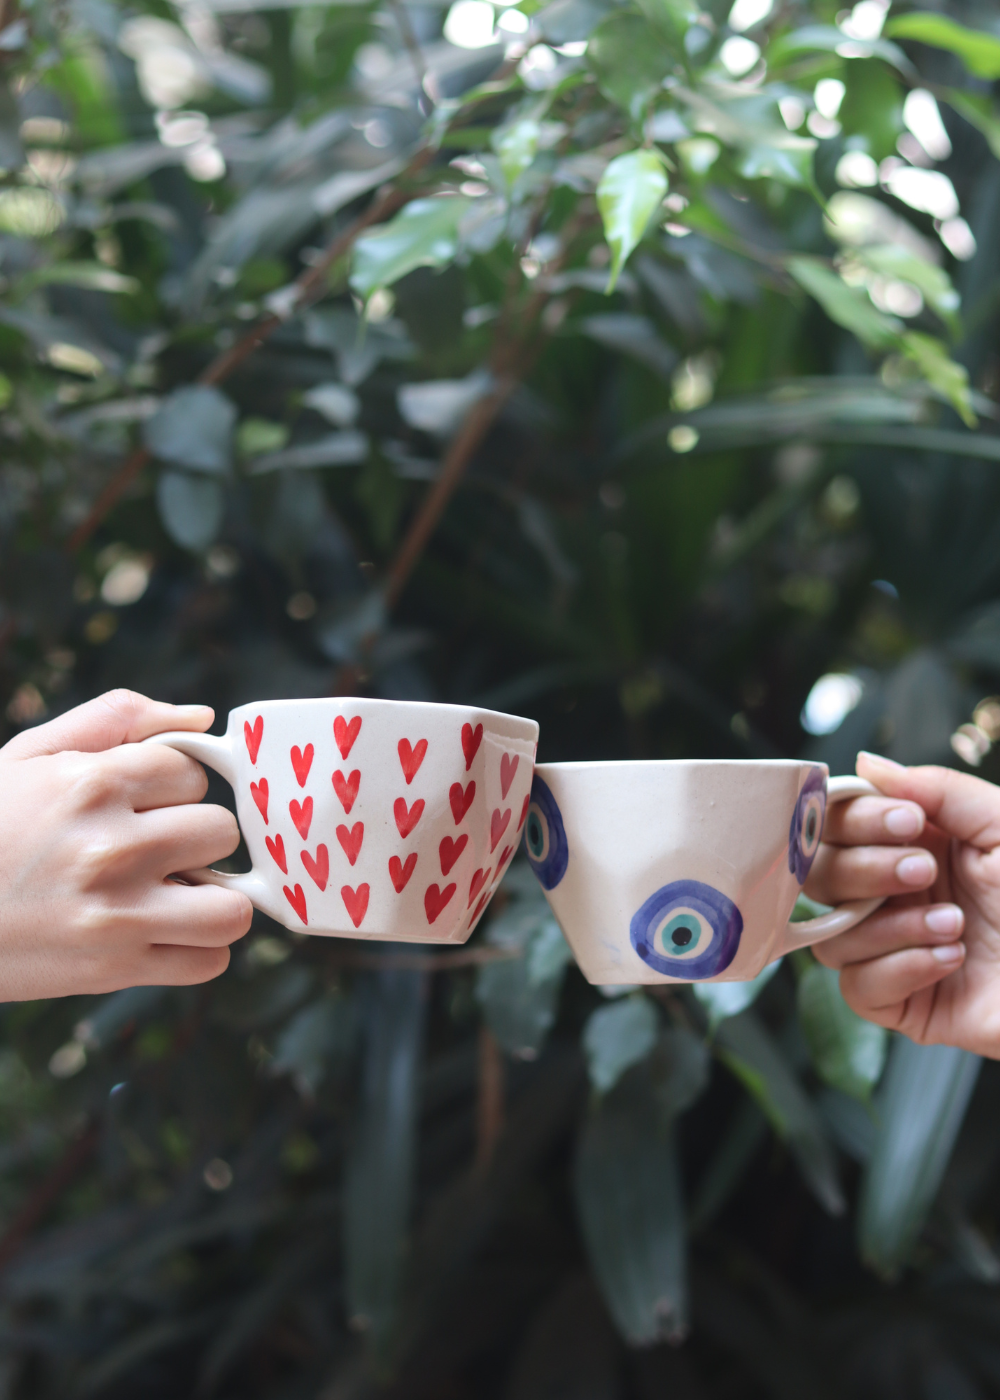 heart mug & evil eye mug made by ceramic 